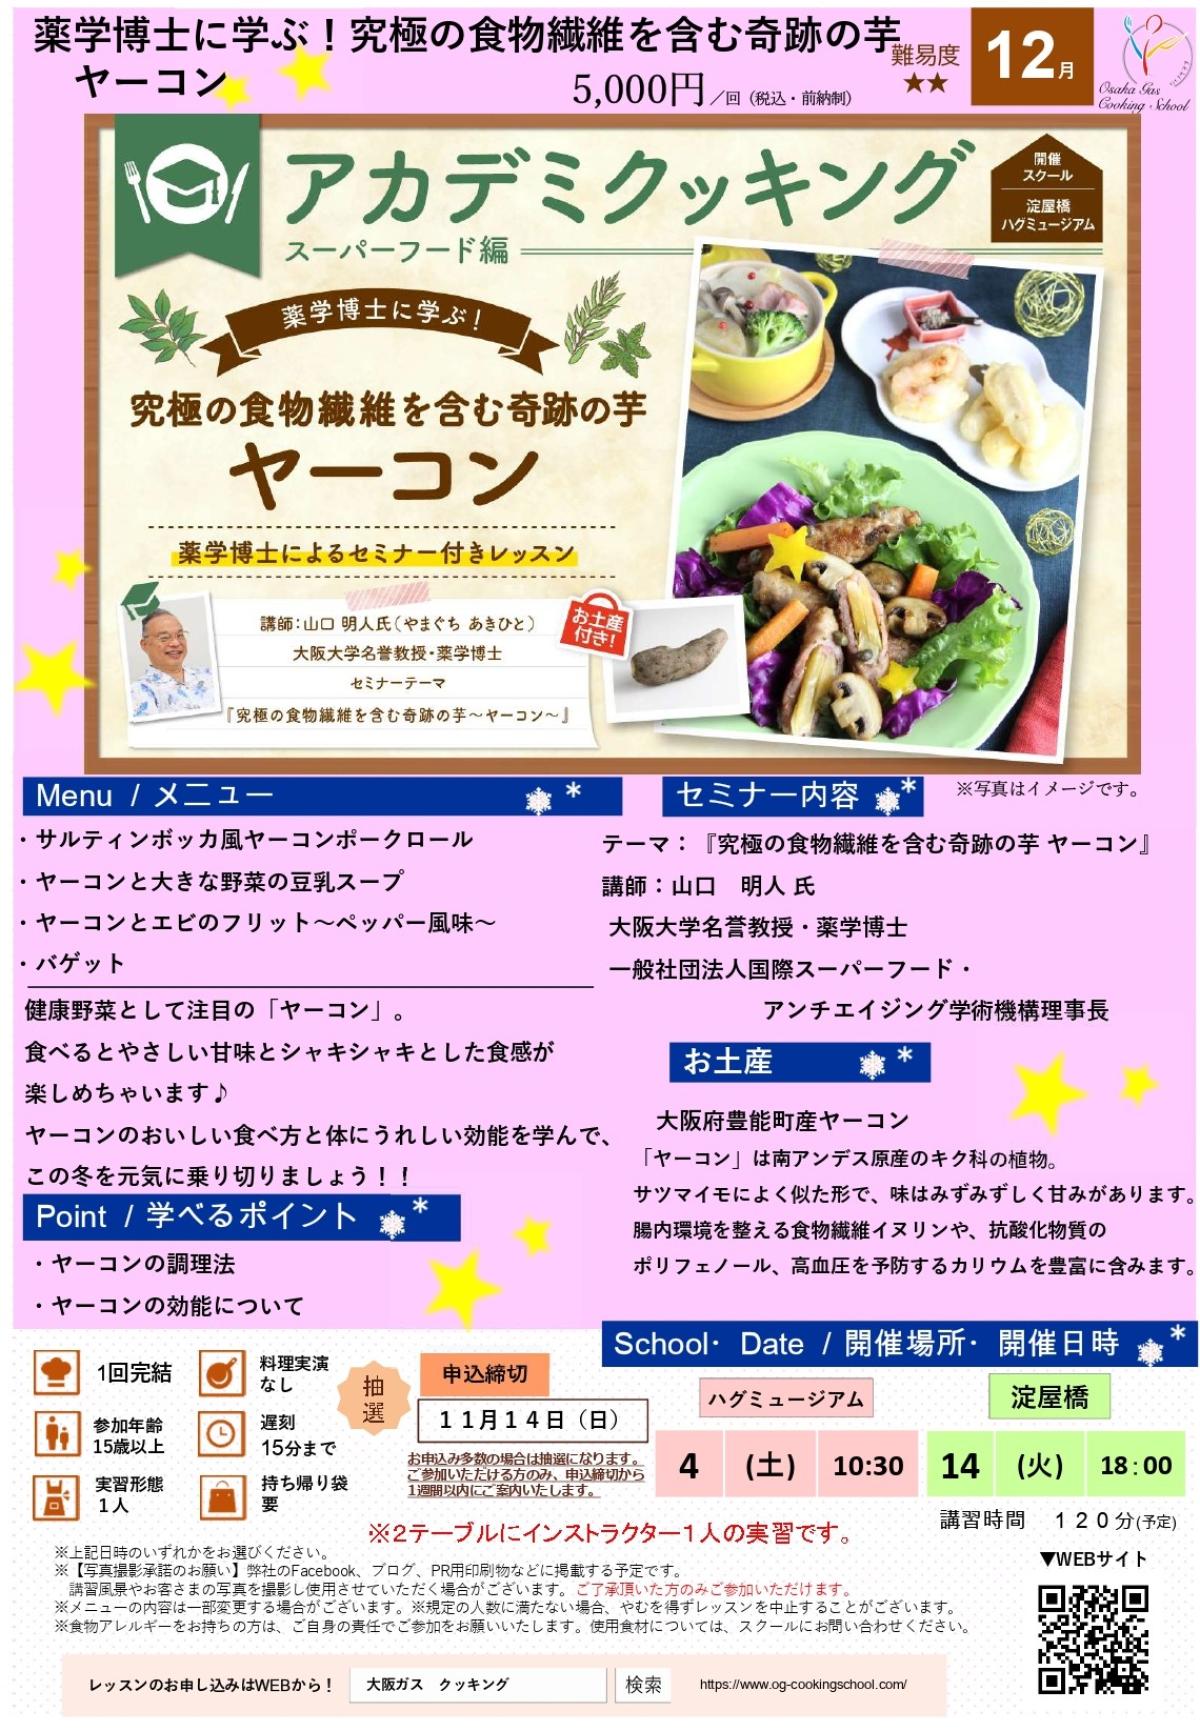 食の資格“栄養 コンシェルジュ”が導入された大阪ガス クッキングスクールが、12月度アカデミクッキング ～ヤーコン～を開催します【栄養コンシェルジュ取得後の仕事】